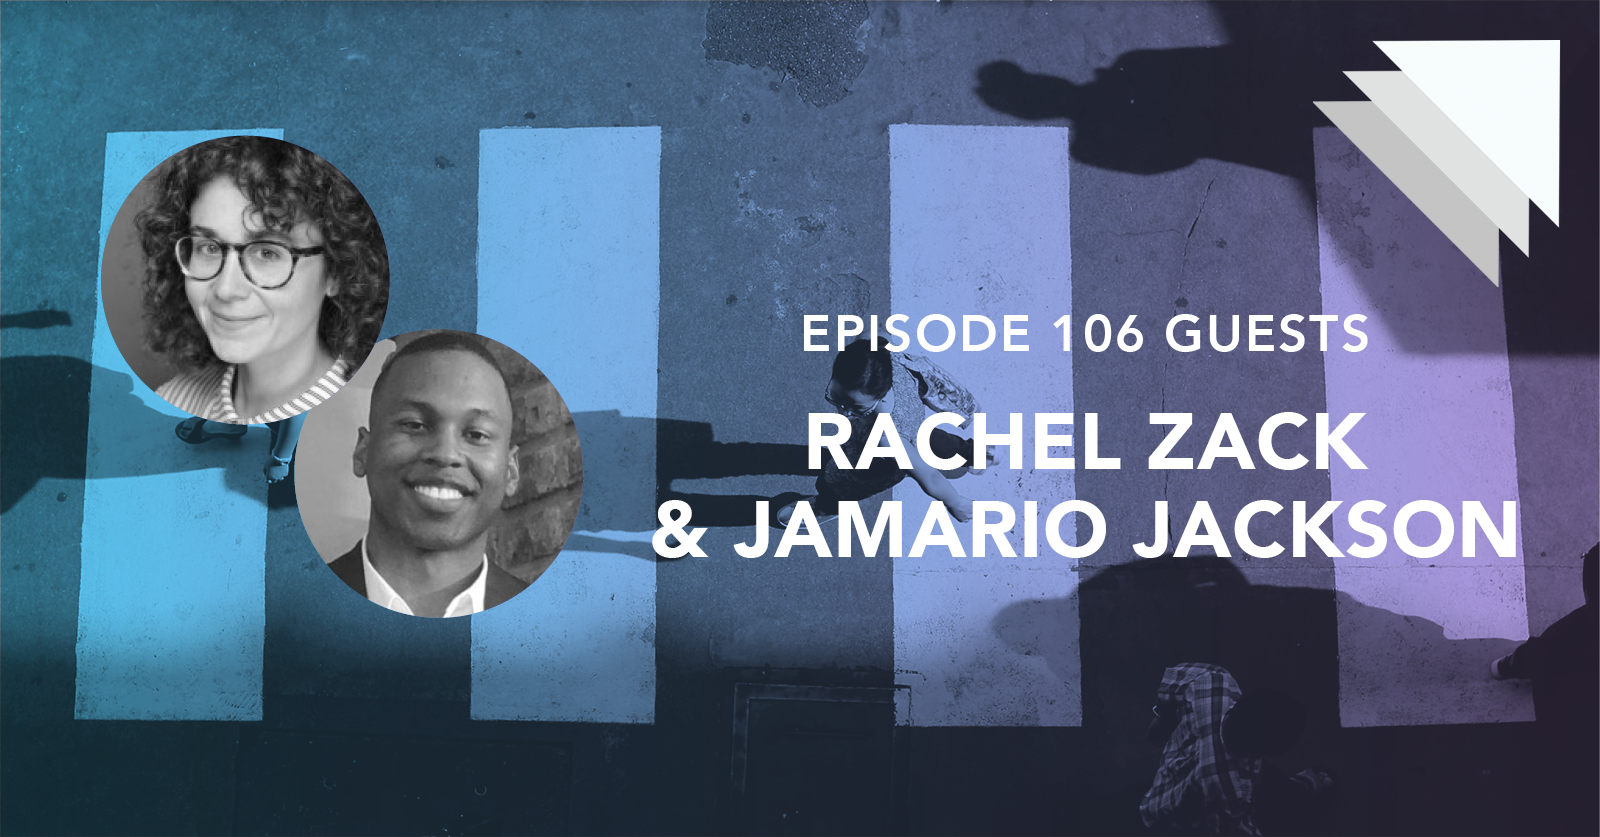 Episode 106 Guests Rachel Zack and Jamario Jackson